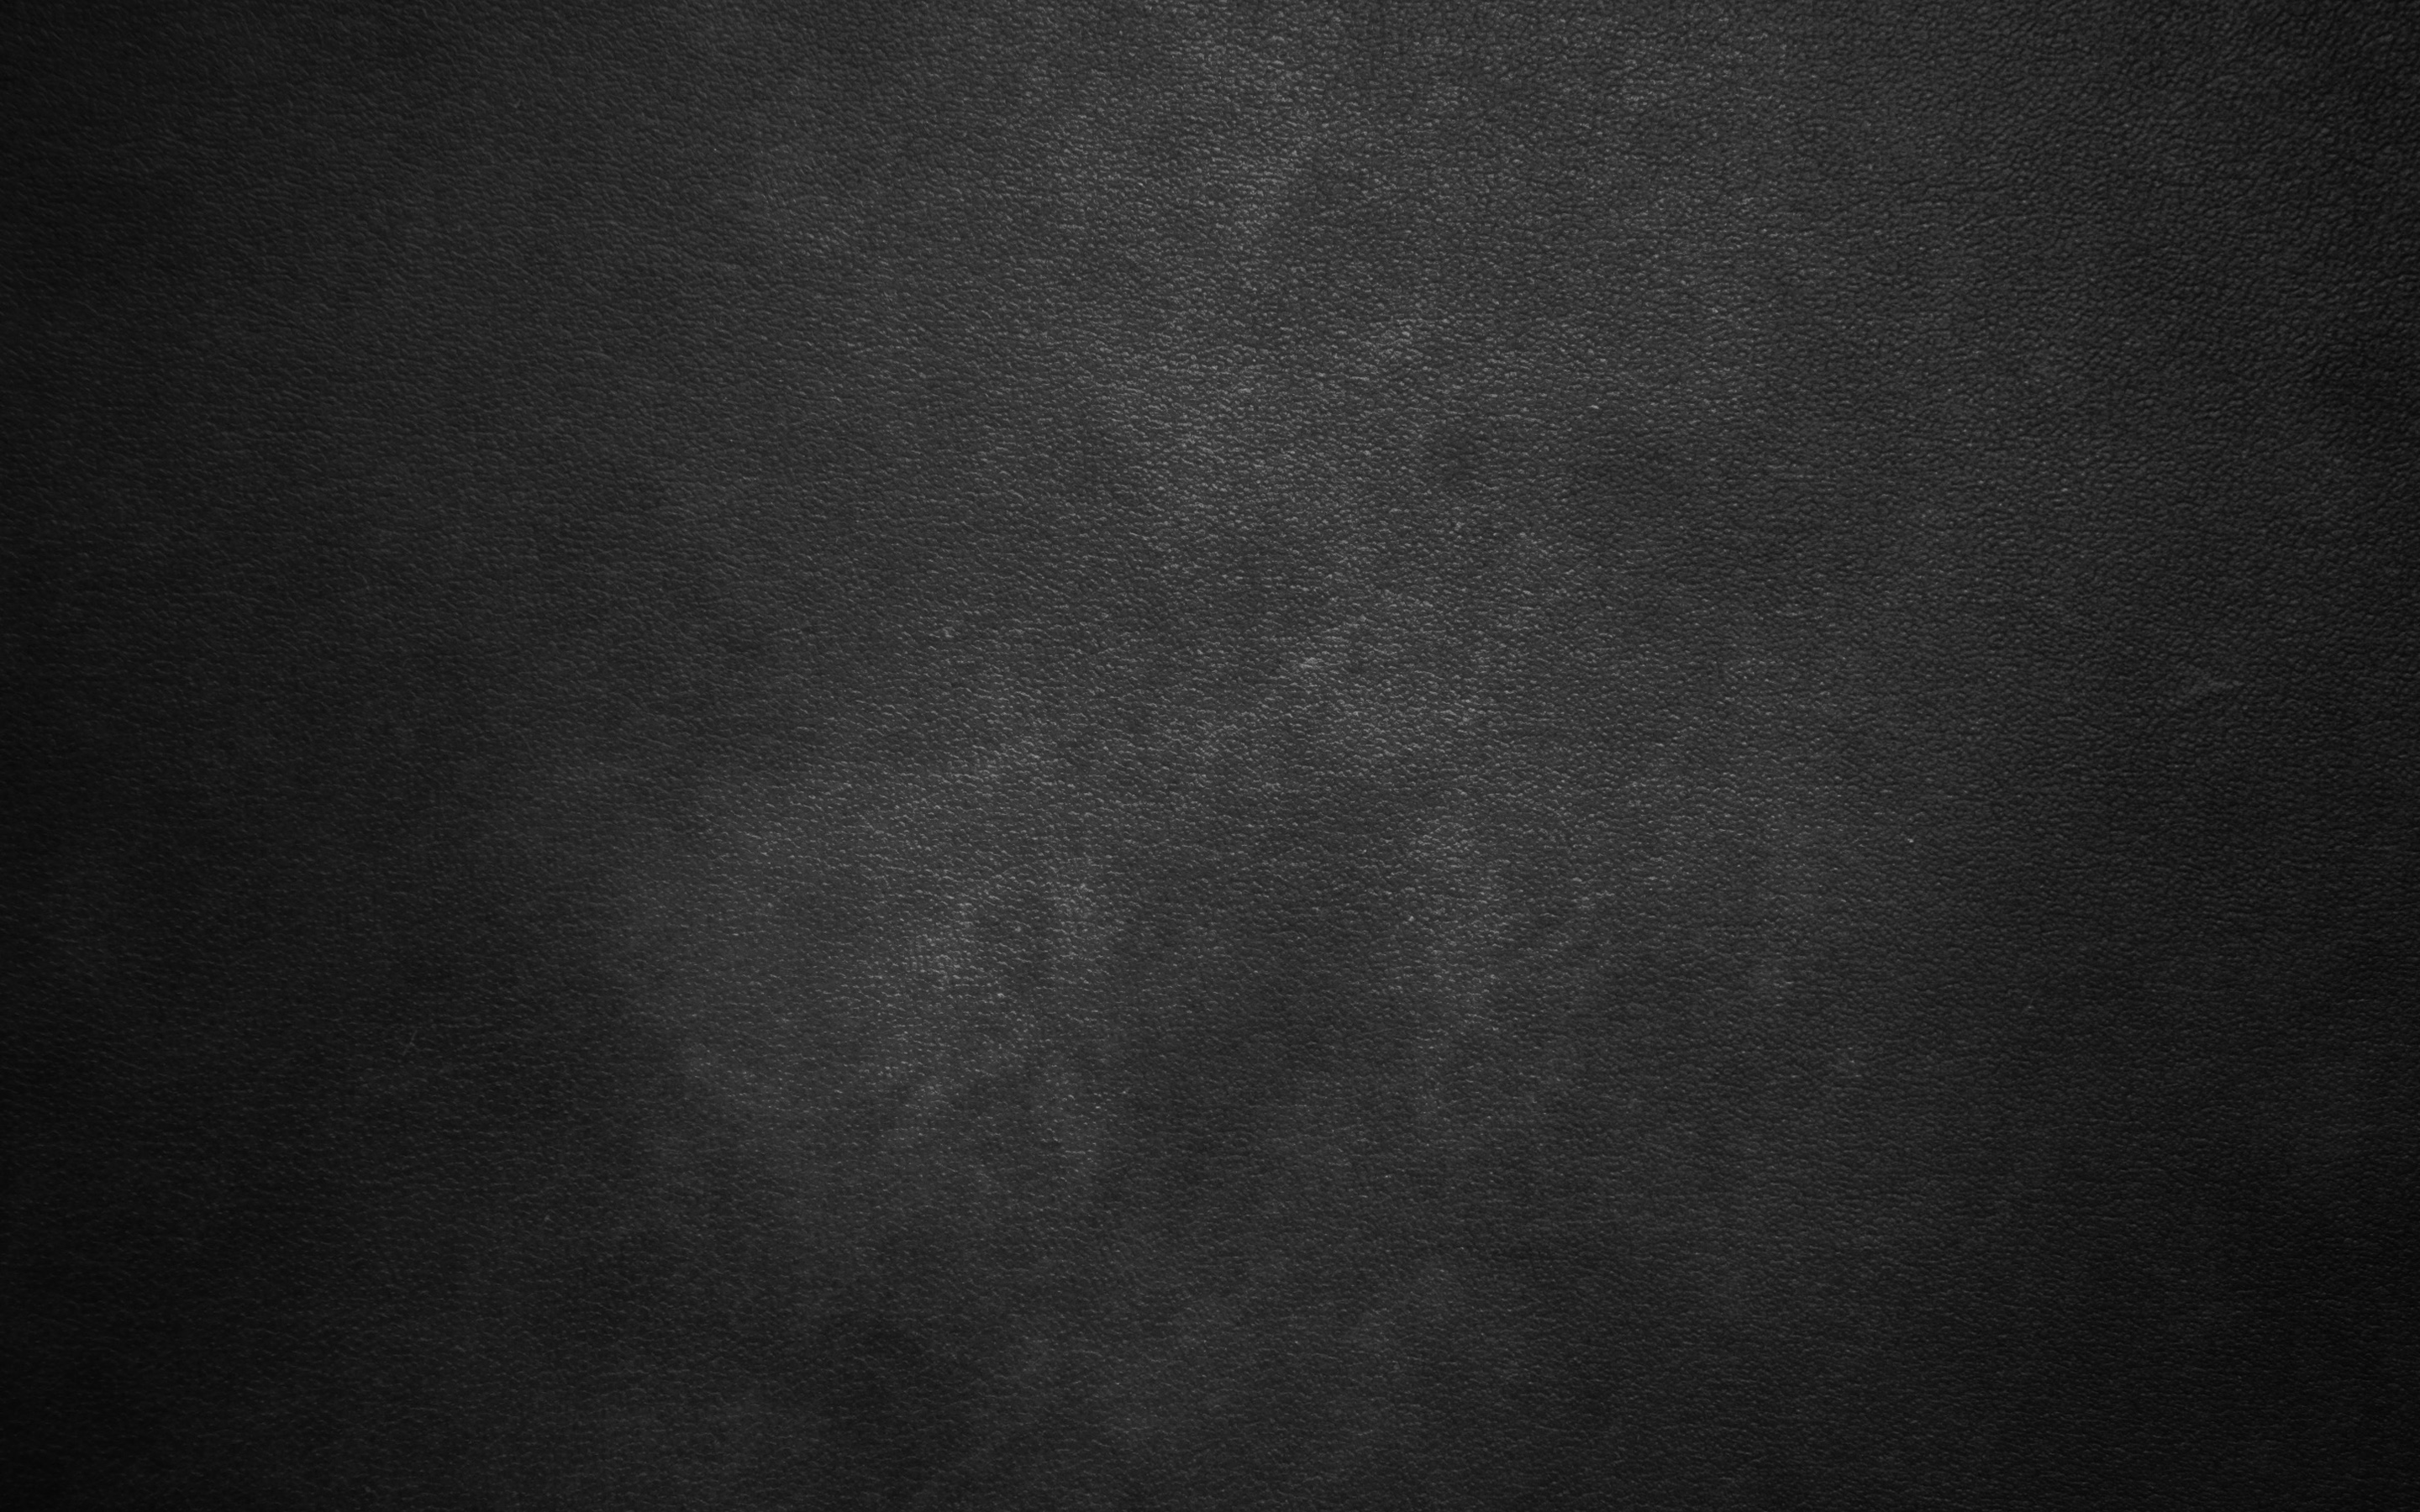 ダウンロード画像 ブラックレザーの質感 ブラックレザー背景 暗いお洒落な背景 布 革 画面の解像度 x1800 壁紙デスクトップ上